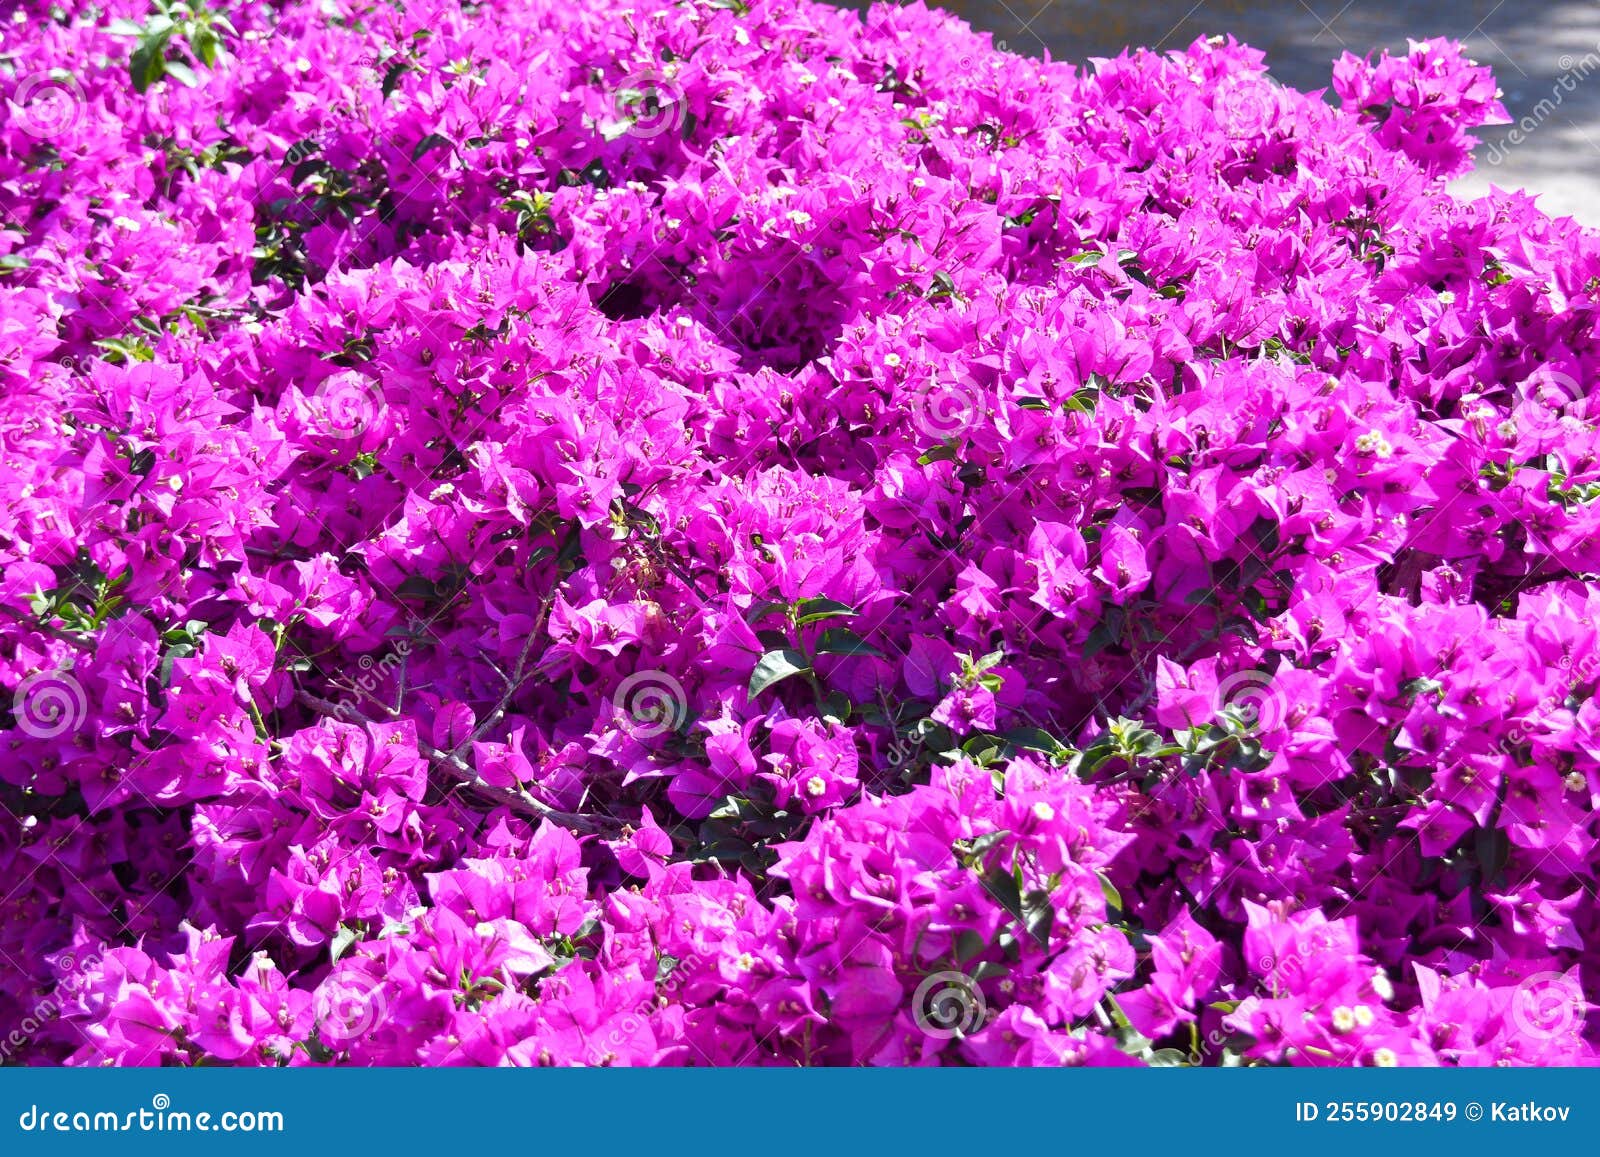 blooming bright pink buganvilla